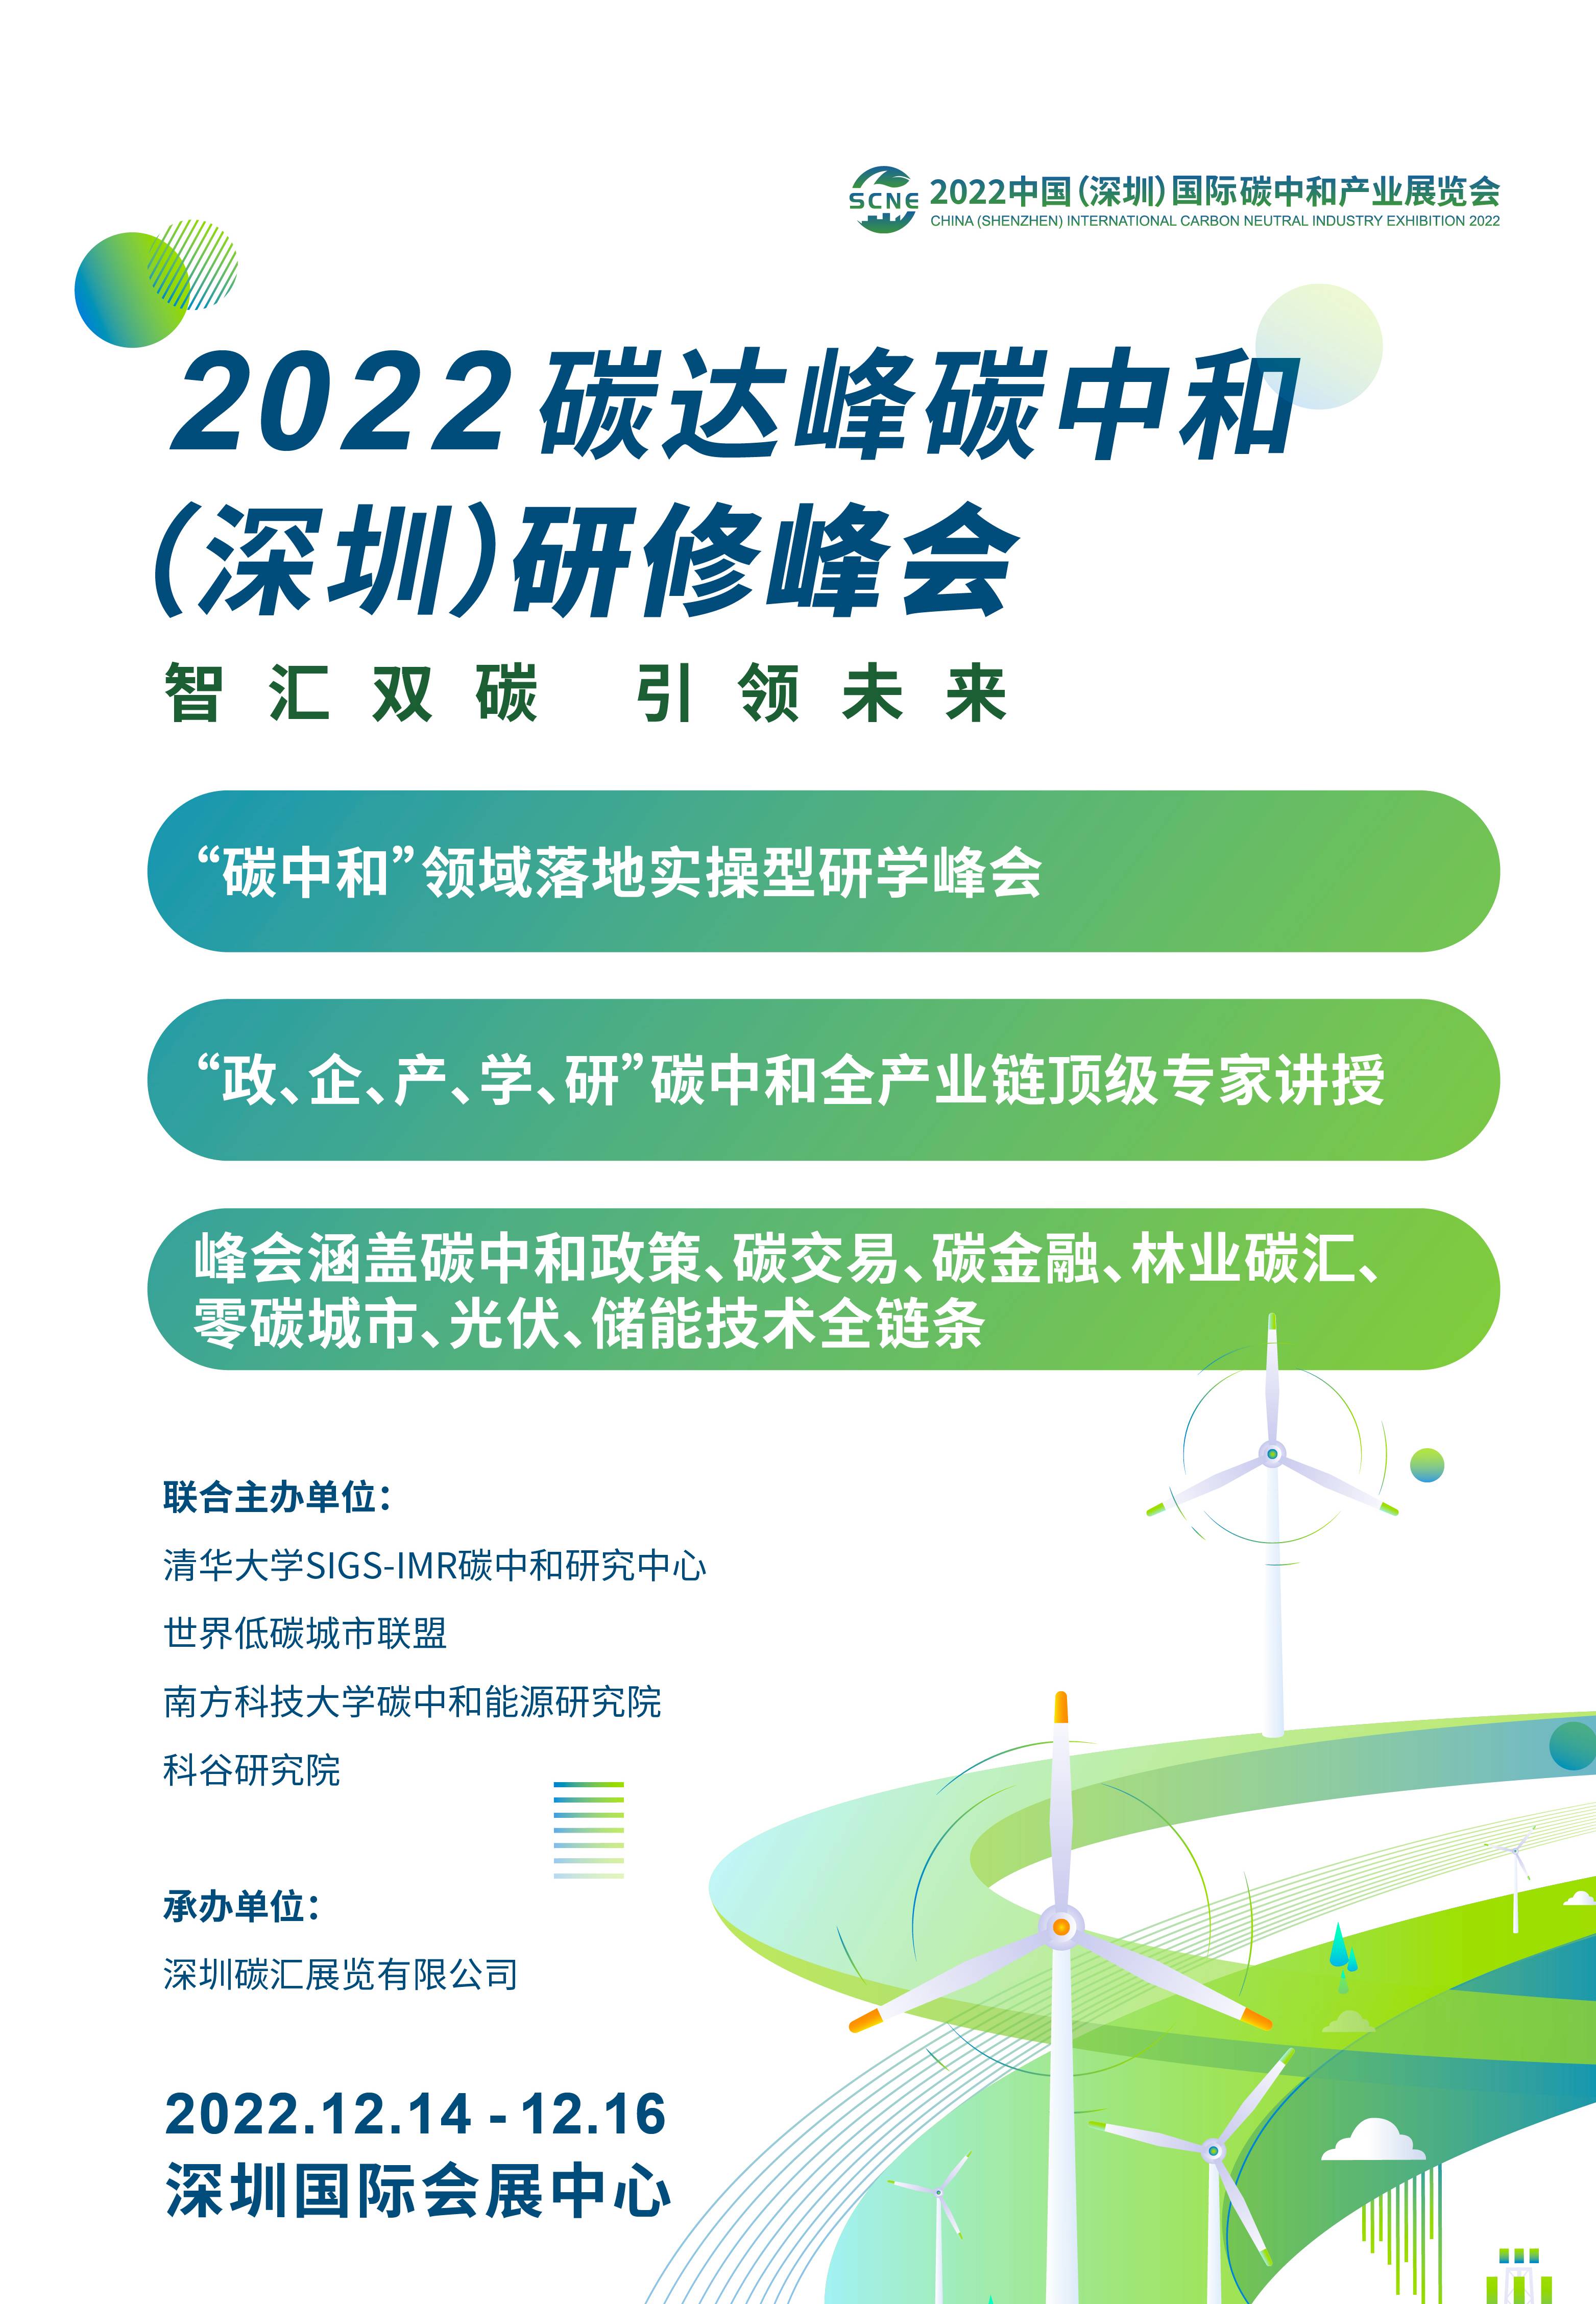 2022碳达峰碳中和（深圳）研修峰会 